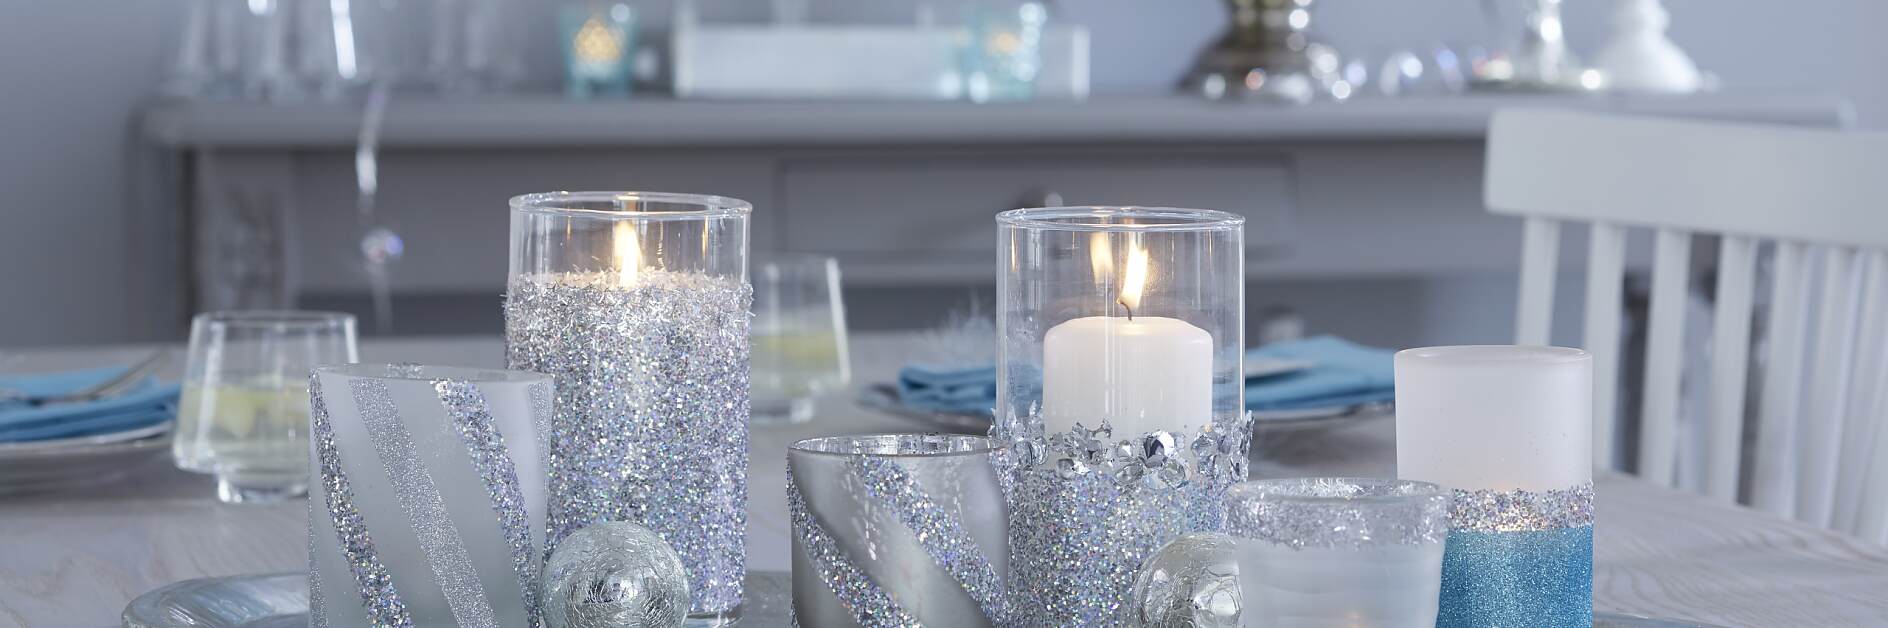 Sparkling Candle Jar Decoration Idea